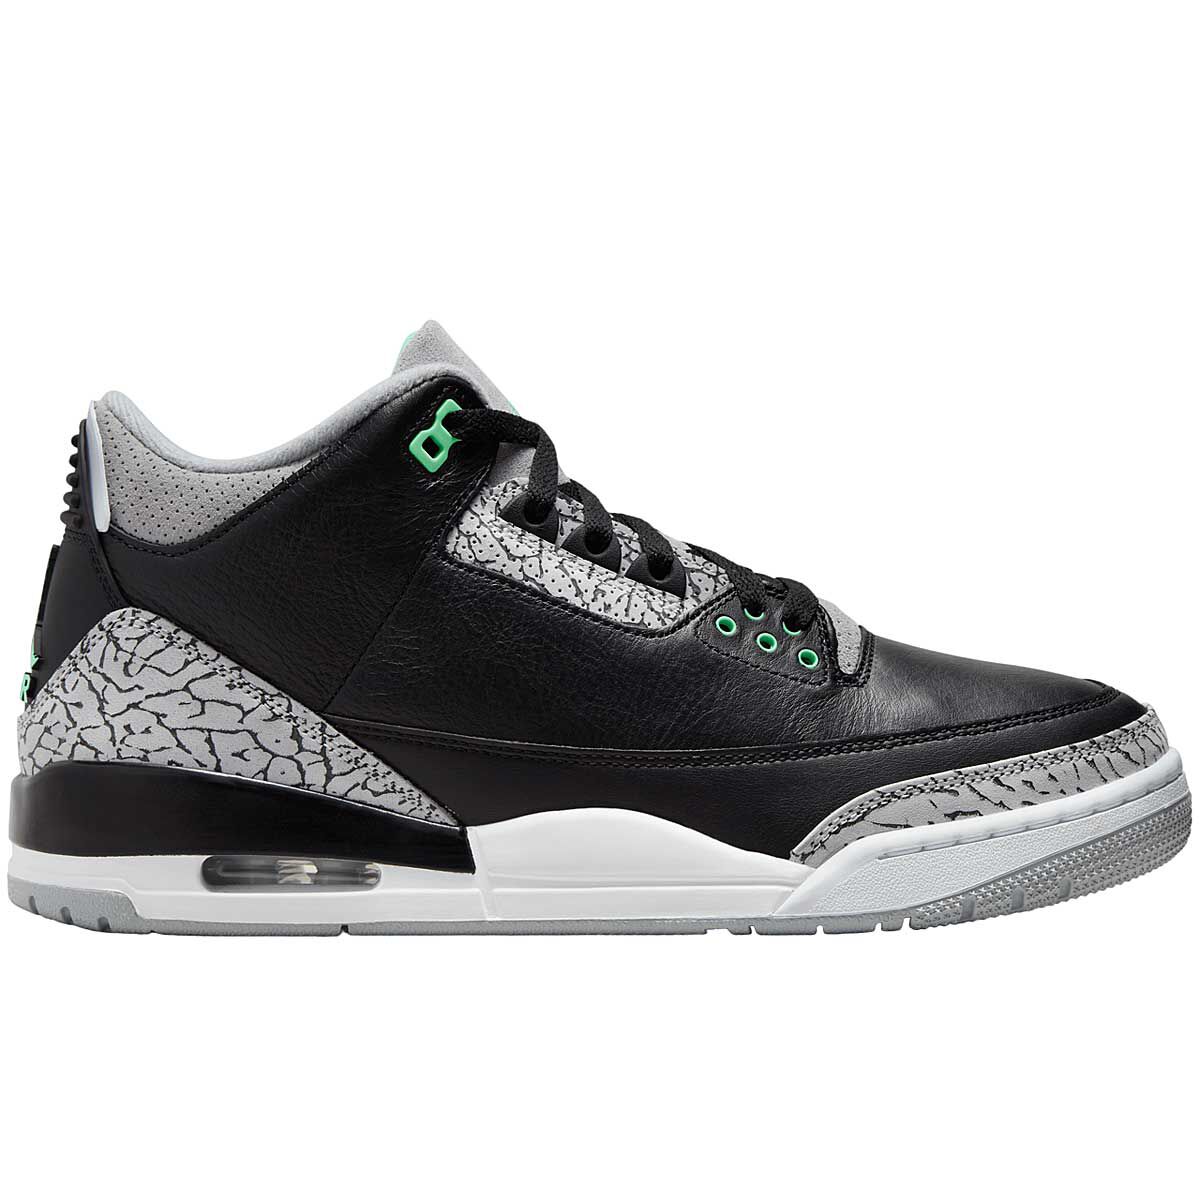 Air Jordan 3 | Buy Retro Jordans at KICKZ.com